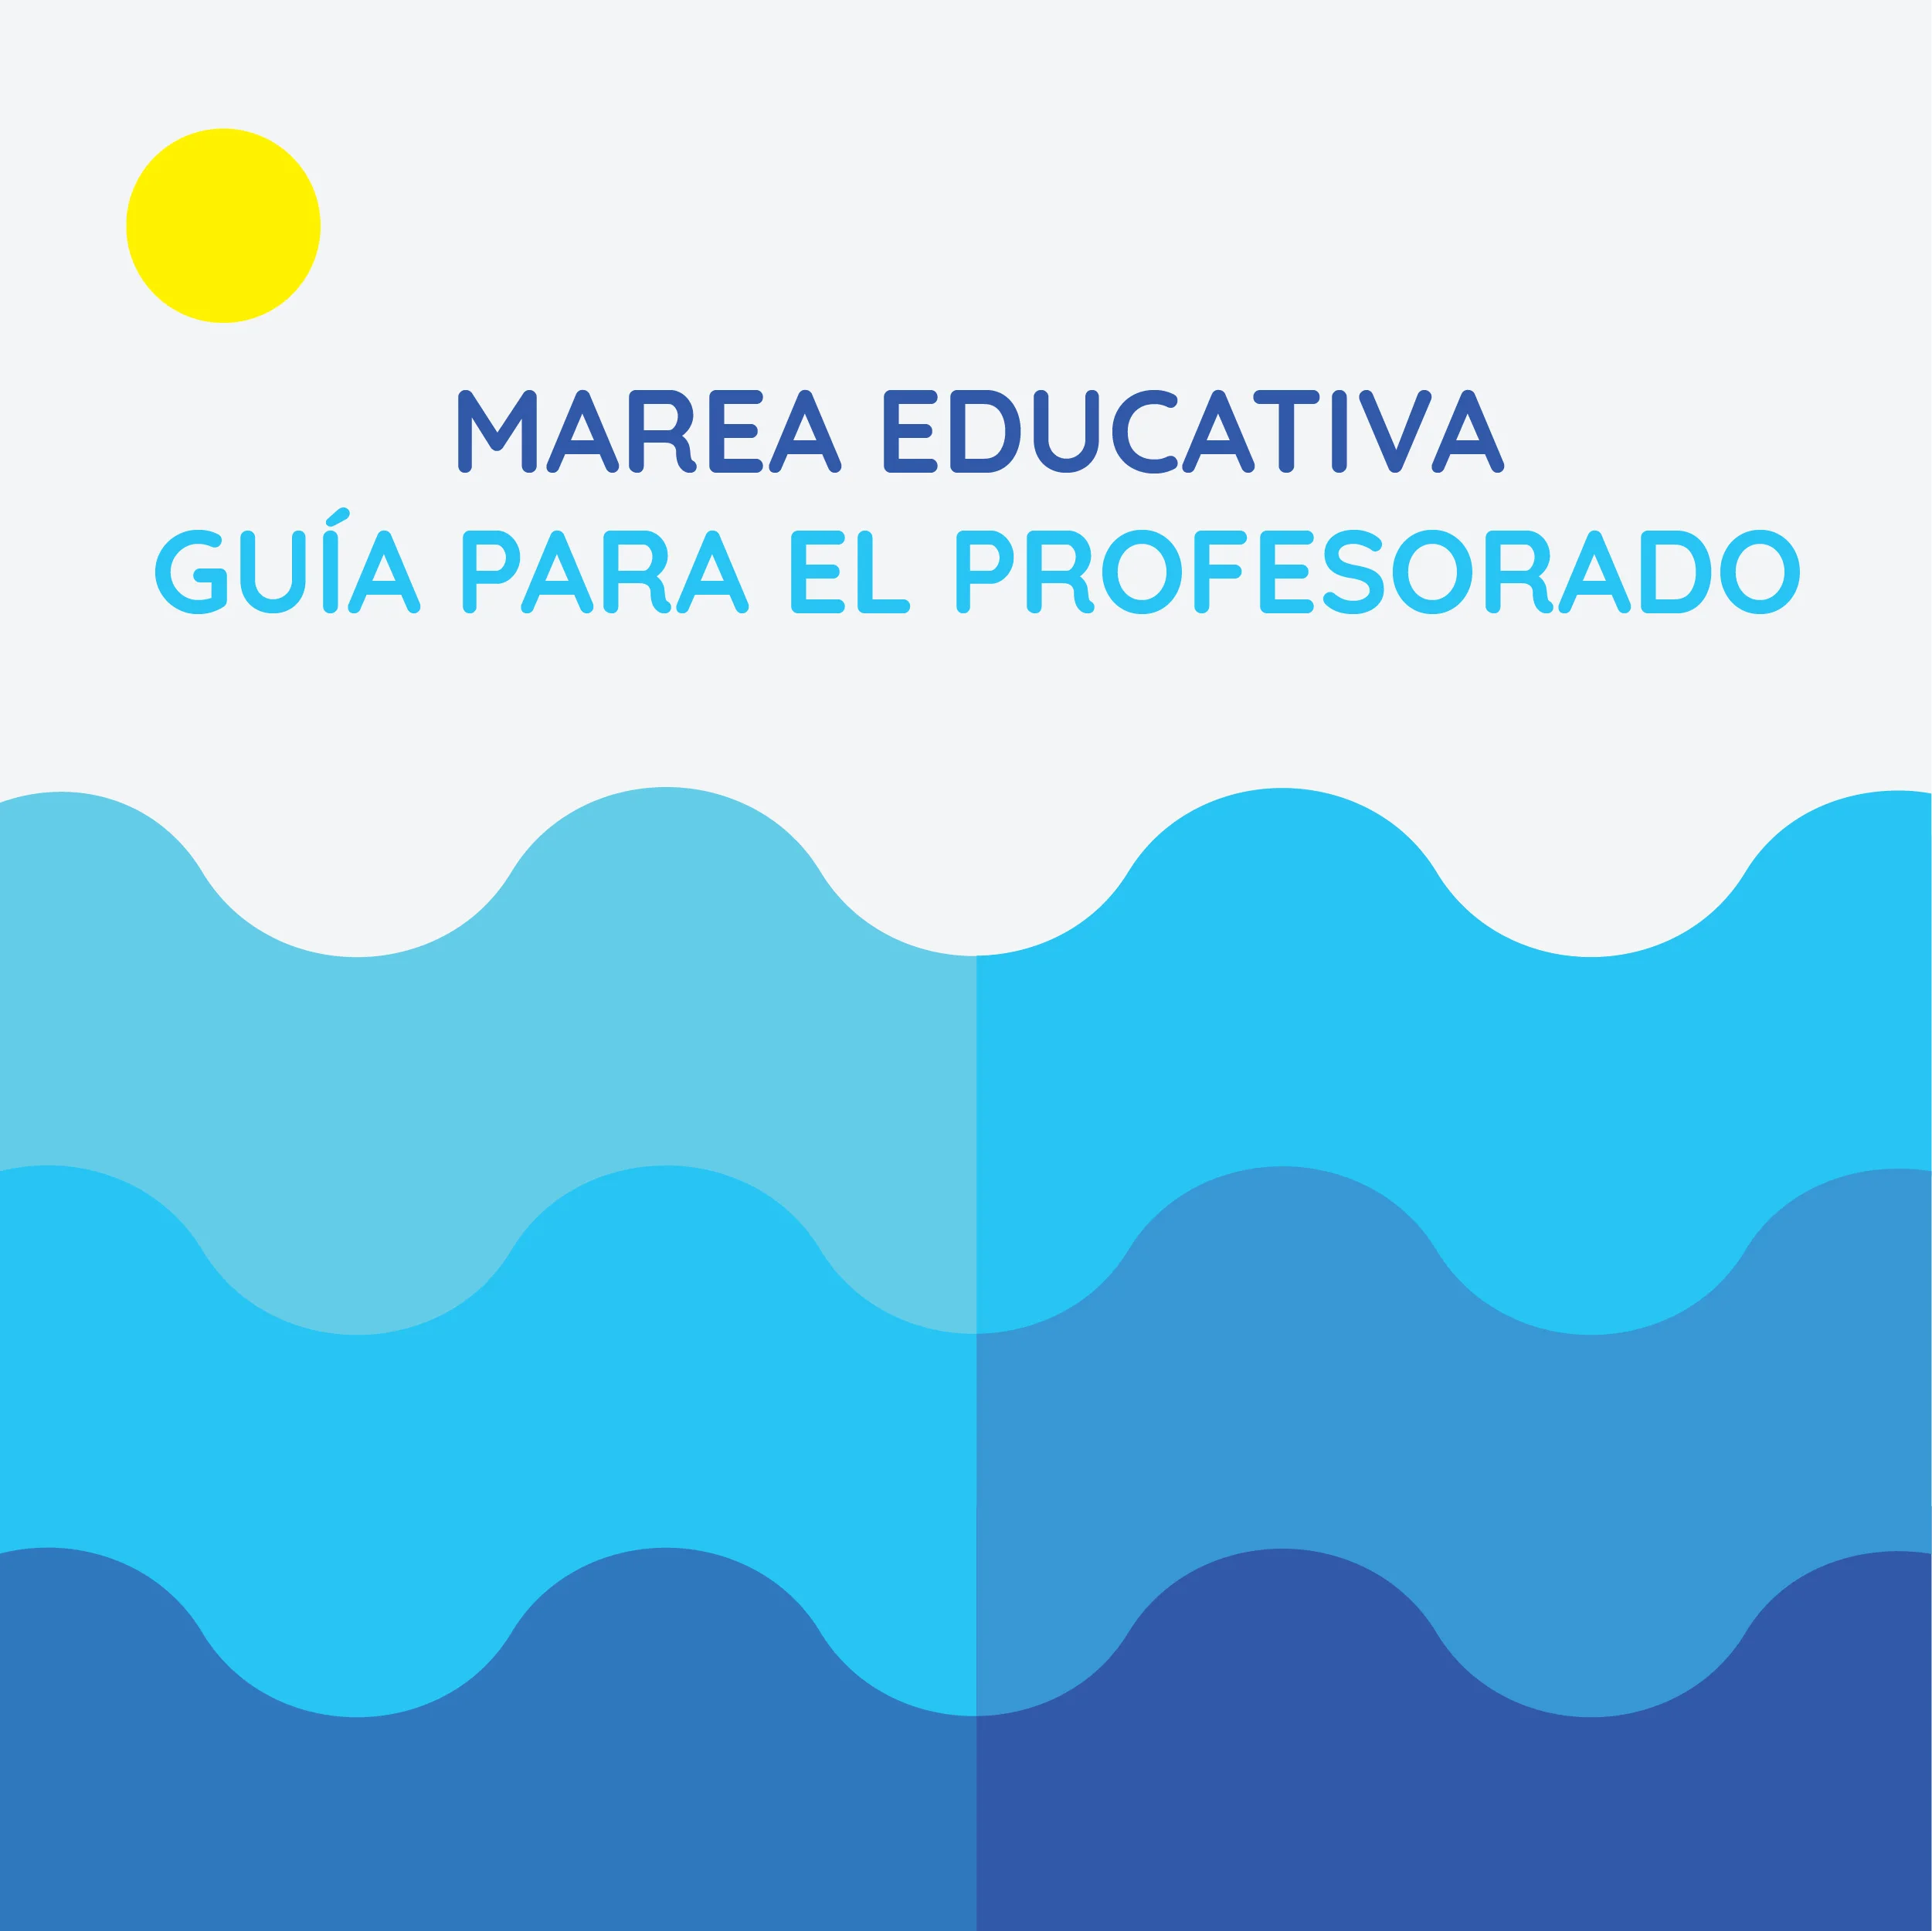 Ilustracion simulando las olas del mar en color azul con un circulo amarillo en la parte superior de la izquierda representando el sol La imagen dice Marea Educativa Guias para el profesorado